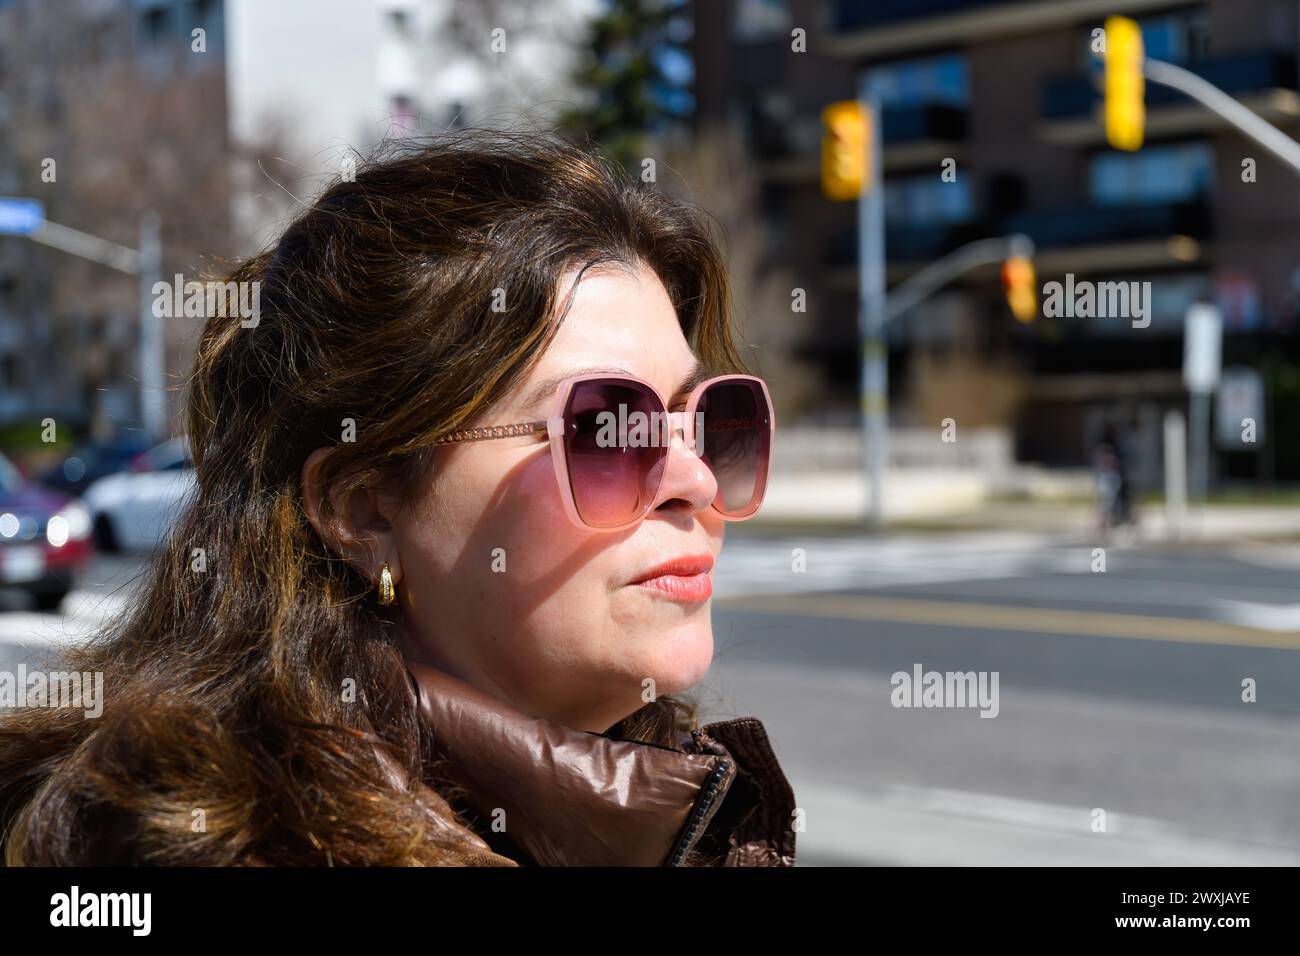 Portrait d'une vraie femme latino-américaine dans une rue de ville, Toronto, Canada Banque D'Images